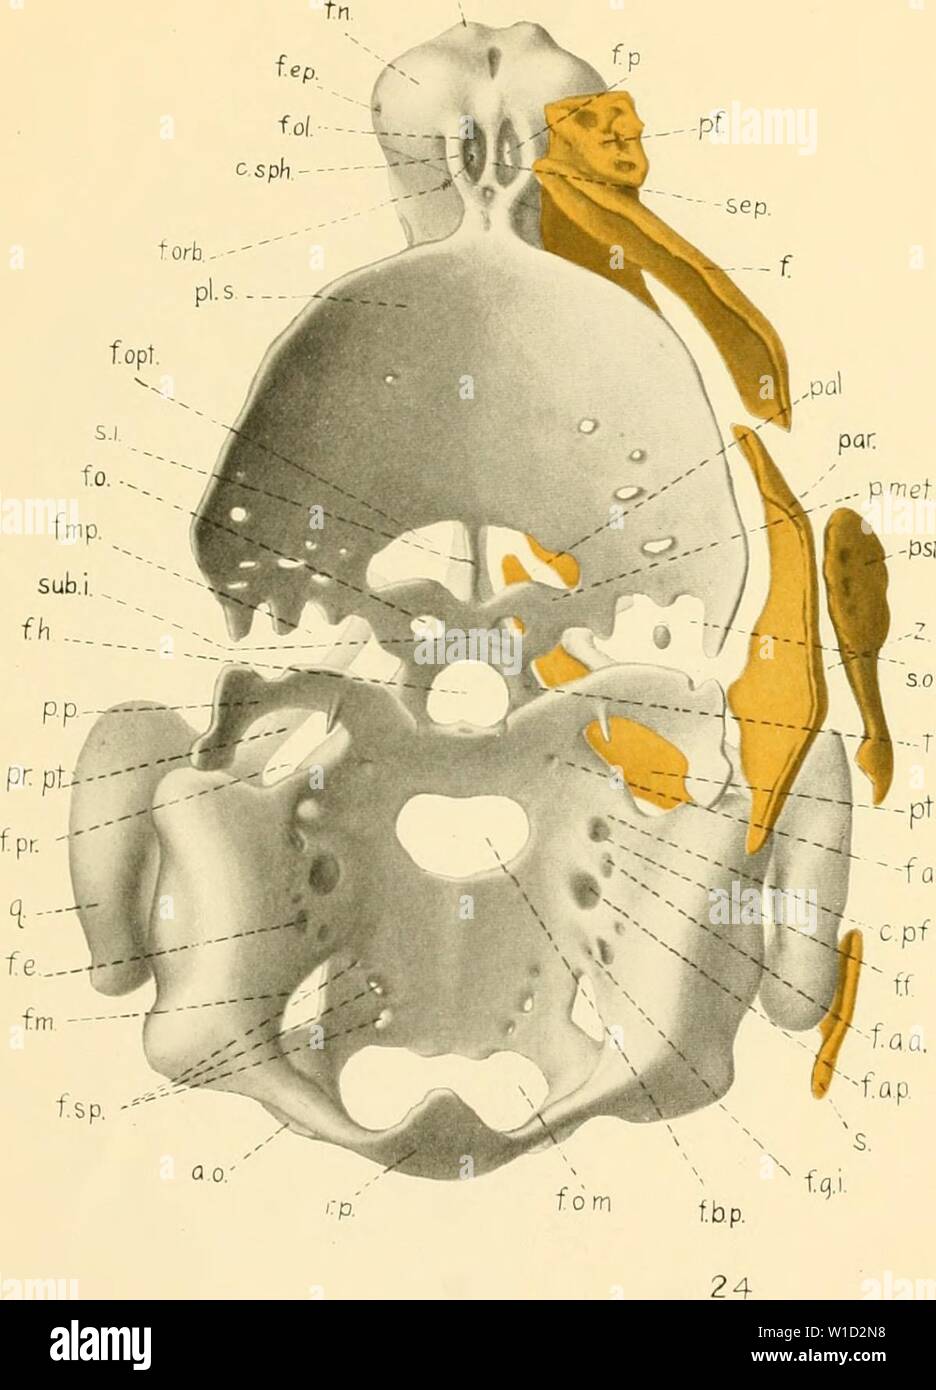 Immagine di archivio da pagina 86 dello sviluppo del cranio. Lo sviluppo del cranio di Emys Lutaria . developmentofsku00kunk Anno: 1912 UKliL01MliNT DEL CRANIO OK KMYS B. W. KUNKEL PIASTRA pr.s. Spiegazione della figura 24 vii dorsale'w di ;i modello del choiKlrocraniuiii di un embrione avente una cara- passo lunghezza di 11 mm. La membrana le ossa del lato destro sono rappresentati. X 20 775 Foto Stock